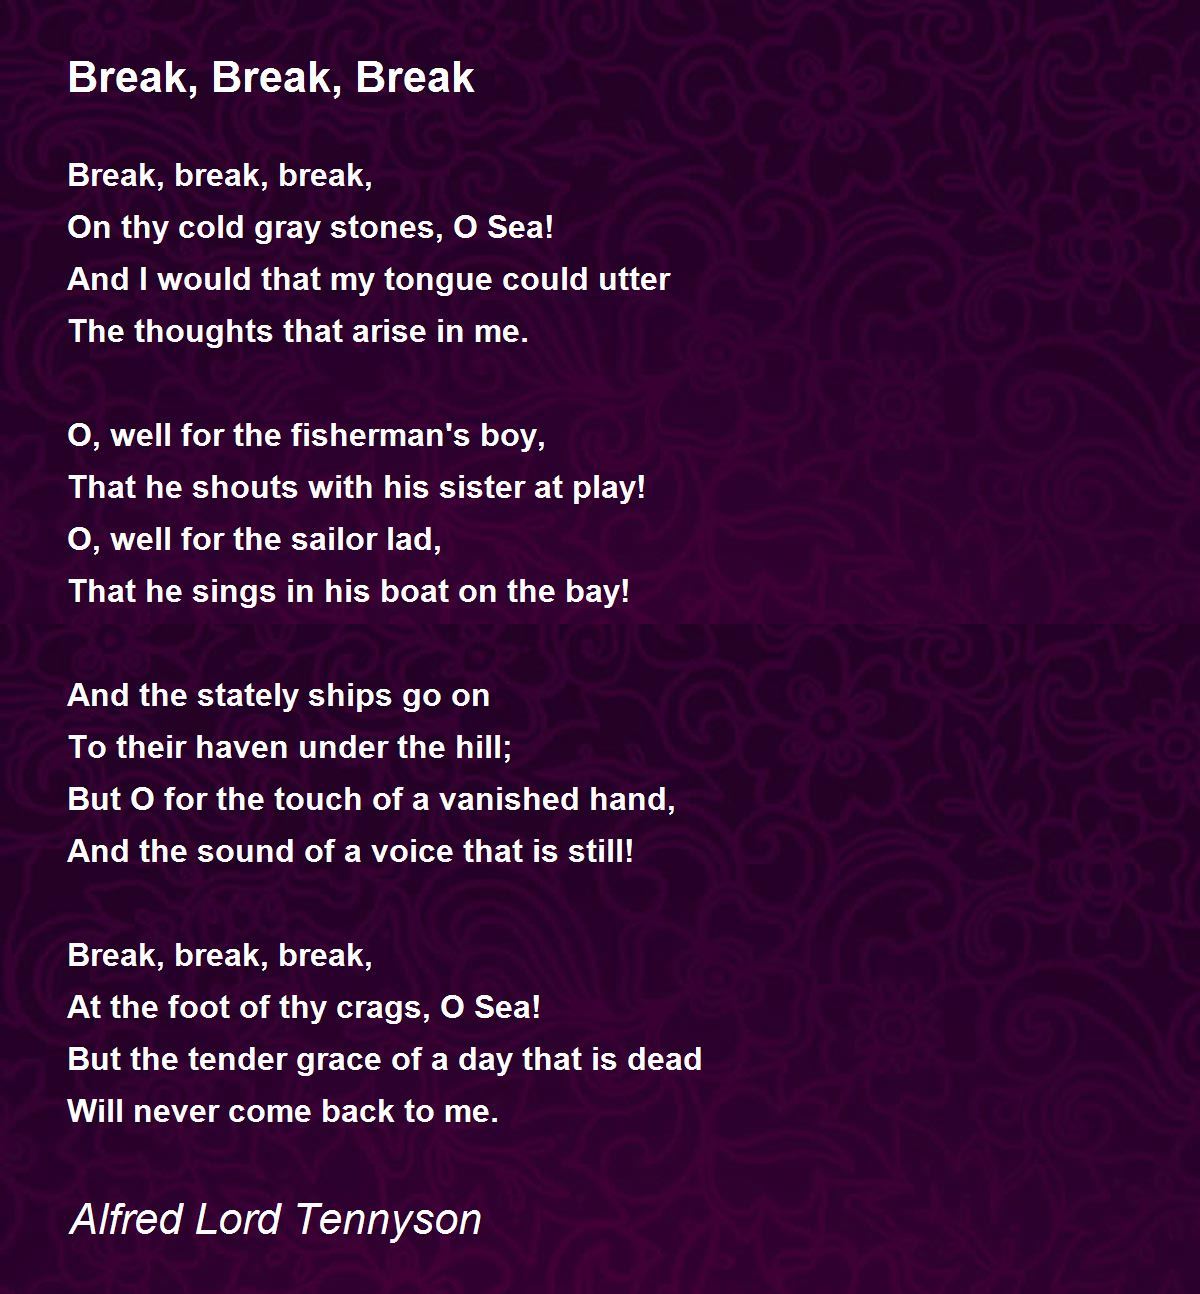 Break, Break, Break Poem by Alfred Lord Tennyson - Poem Hunter
